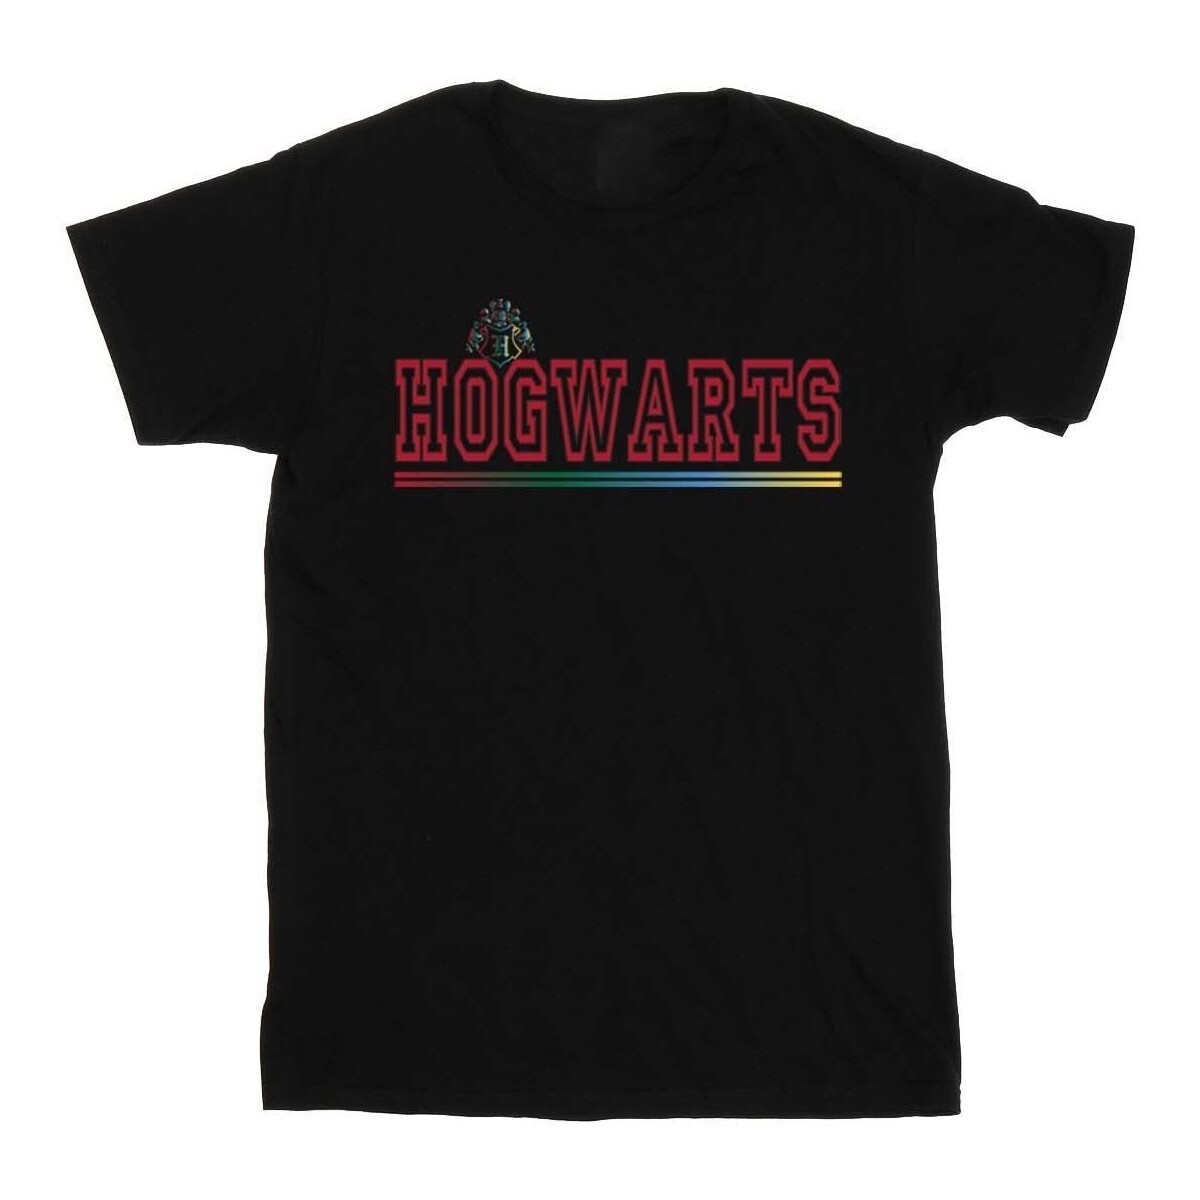 Vêtements Garçon T-shirts manches courtes Harry Potter Hogwarts Collegial Noir